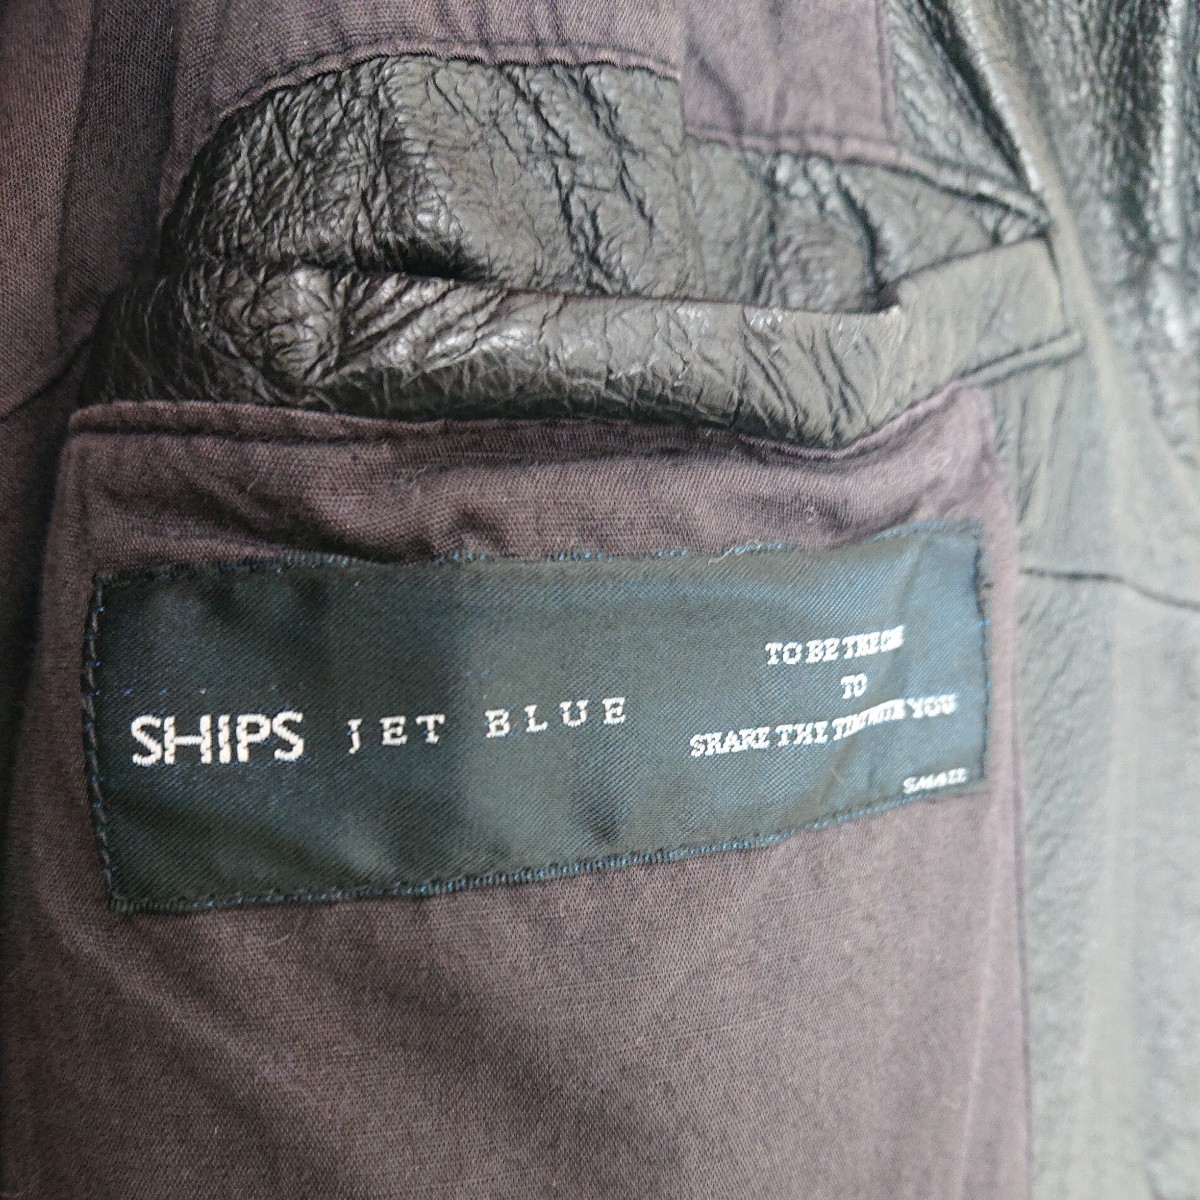 SHIPS JET BLUE Wzipレザーブルゾン ブラック シップス レザージャケット ライダースジャケット 革ジャン_画像3